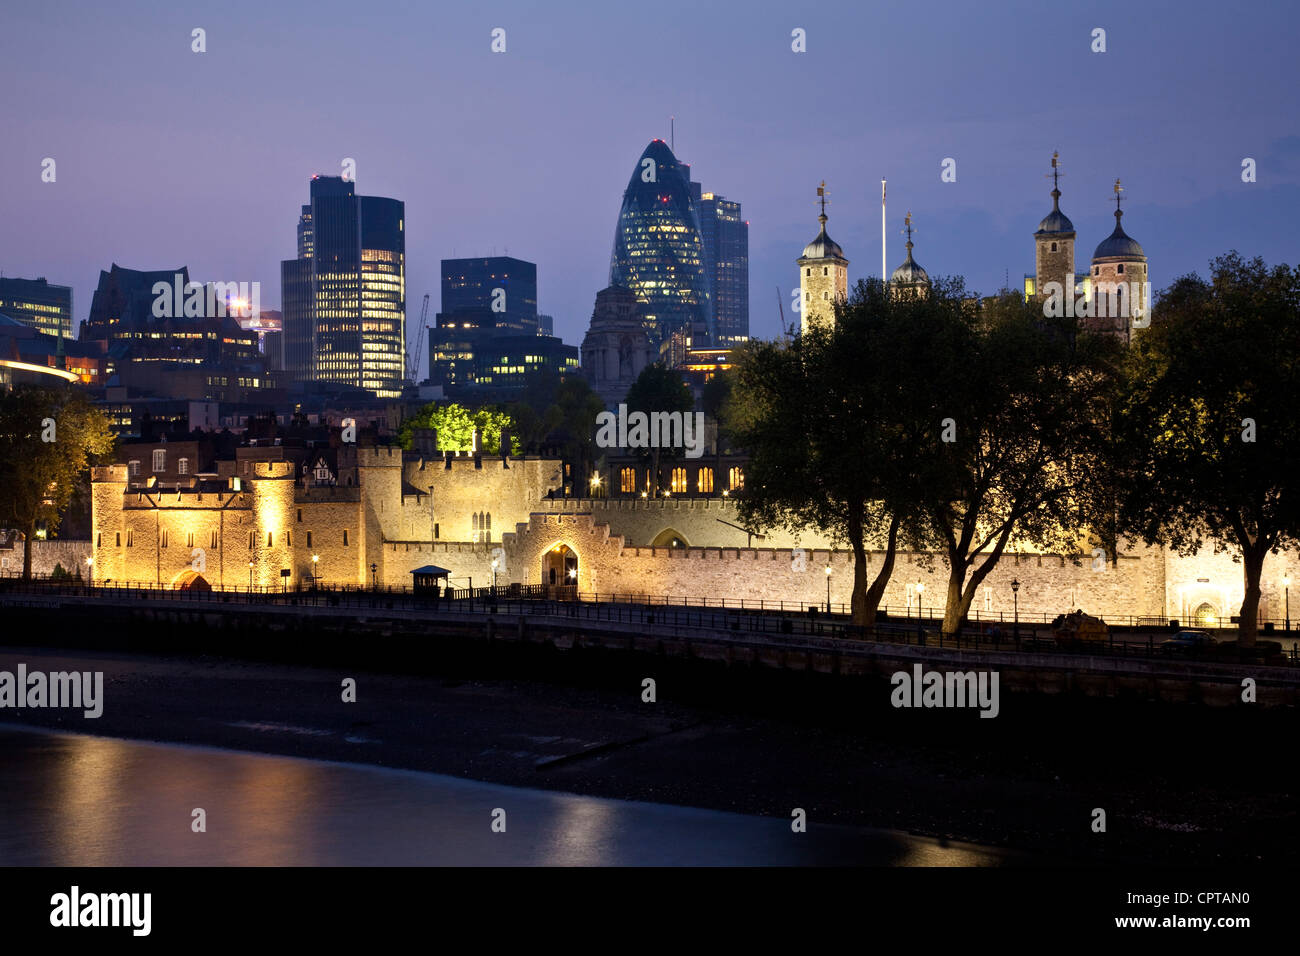 La Tour de Londres et les toits de la ville, Londres, Angleterre Banque D'Images